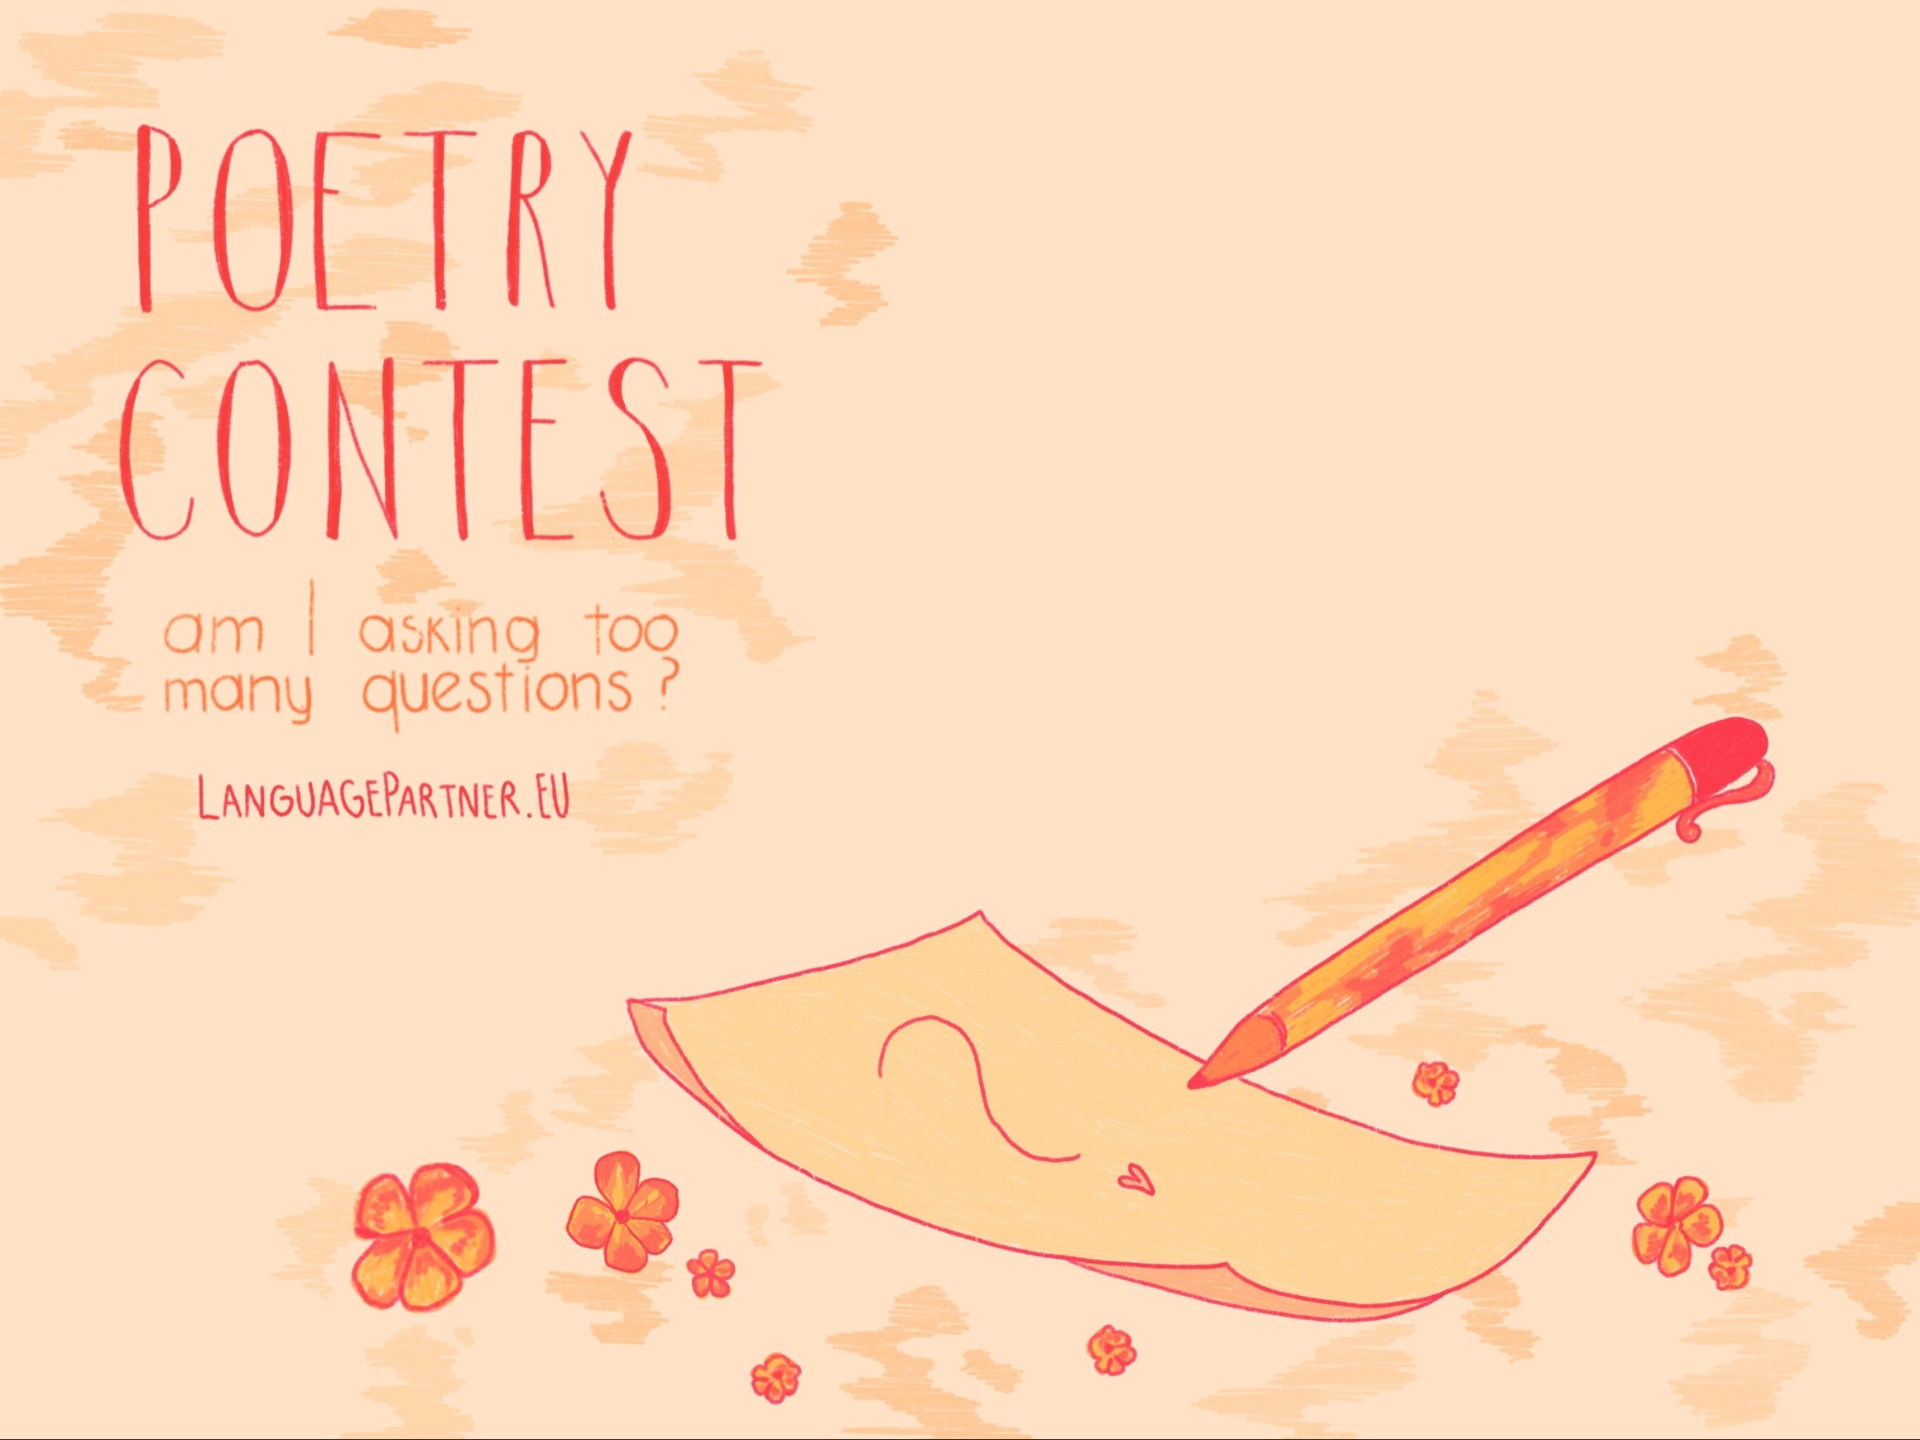 Poetry Contest, Language&Partner